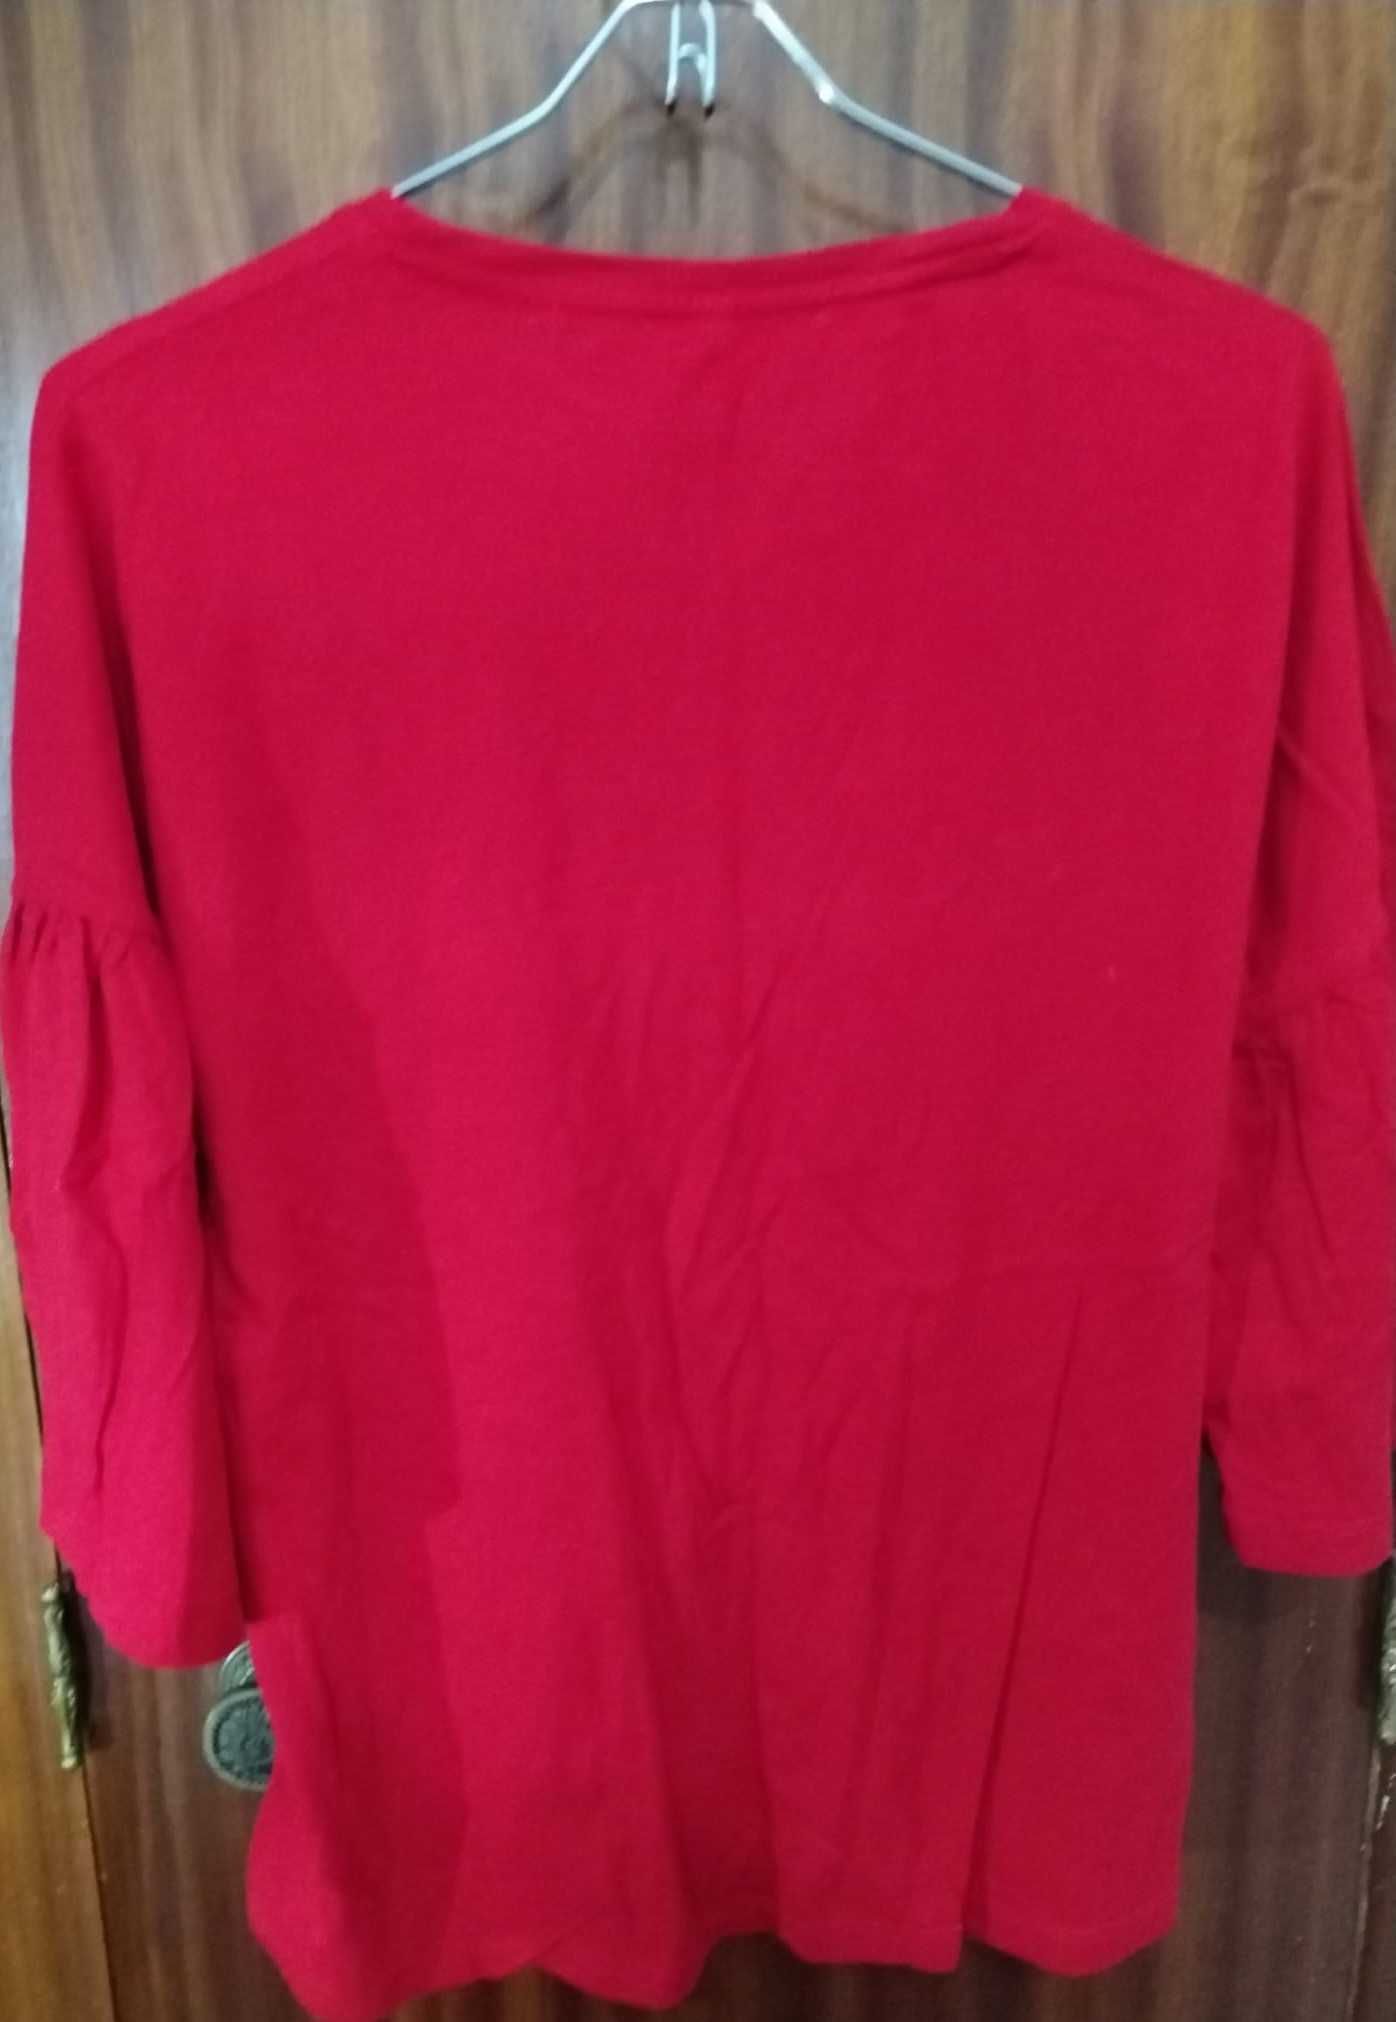 Camisola de manga comprida vermelha Tiffosi Tamanho S